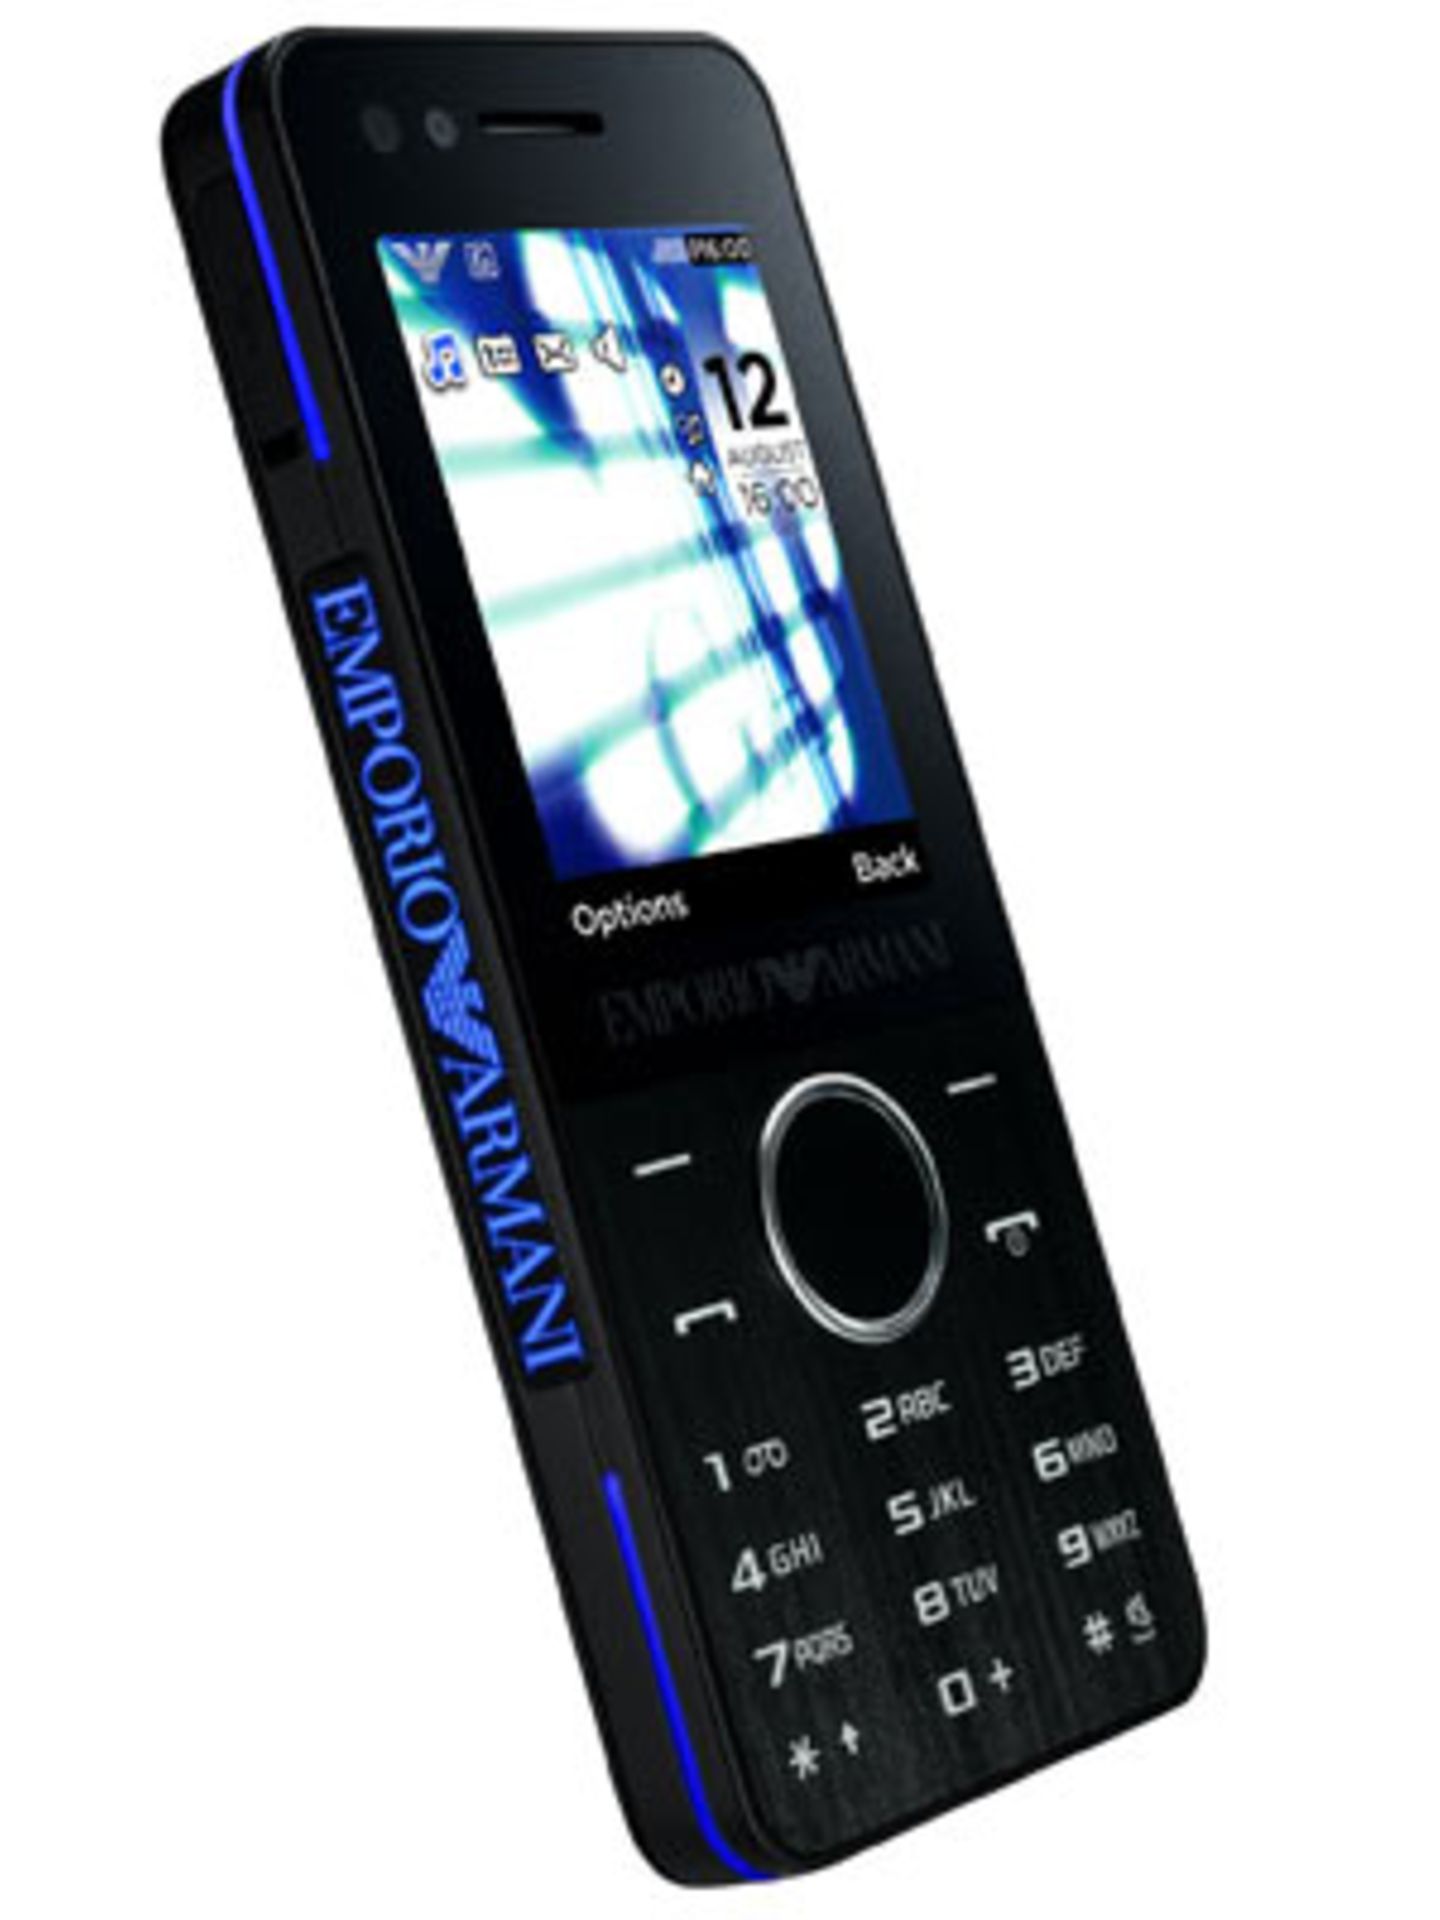 "Samsung Armani Night" Absoluter Hingucker ist das Armani Night Handy. Mit der 3,0-Megapixel-Kamera mit vierfachem Digitalzoom und Videokamerafunktion könnt ihre eure schönsten Frühlingserlebnisse digitalisieren. Für Bespaßung ist selbstverständlich auch gesorgt, denn das Armani Night besitzt neben einem MP3-Player auch noch ein UKW-Radio. Außerdem einen uTrack zum Auffinden des Telefons, wenn es gestohlen wurde - oder ihr es verbummelt habt. Um 200 Euro ohne Vertrag.